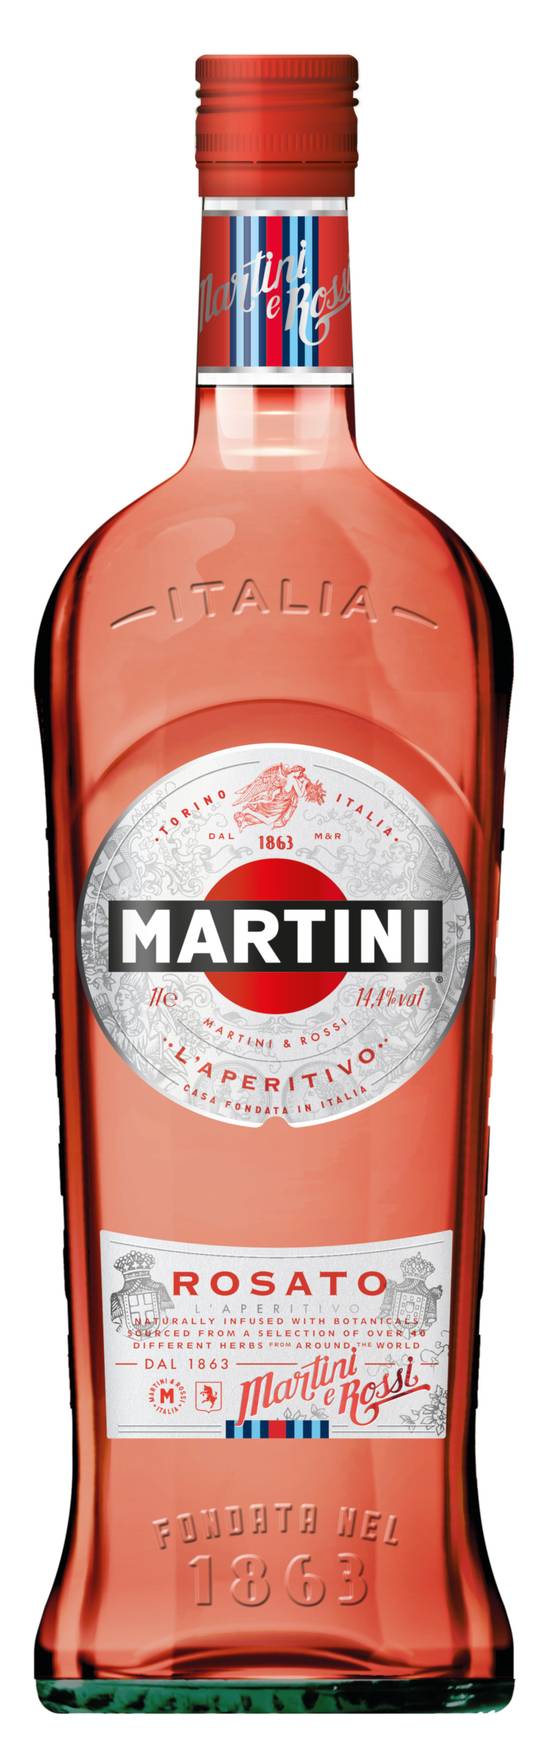 Martini - Apéritif à base de vin rosato (1 L)